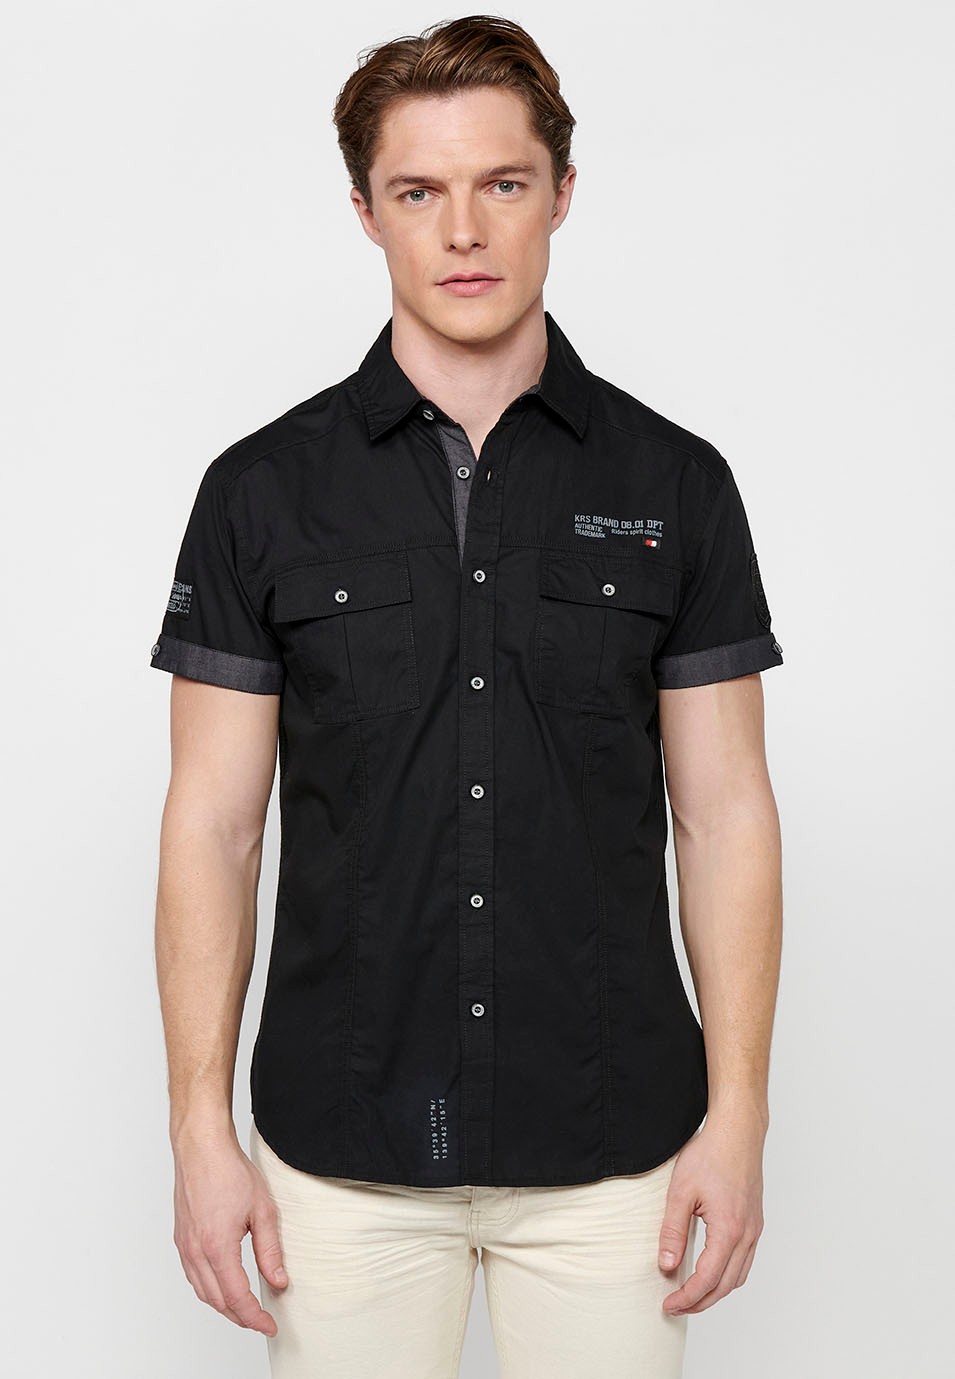 Kurzärmliges Baumwollhemd mit Knopfverschluss vorne und Pattentaschen vorne in der Farbe schwarz für Herren